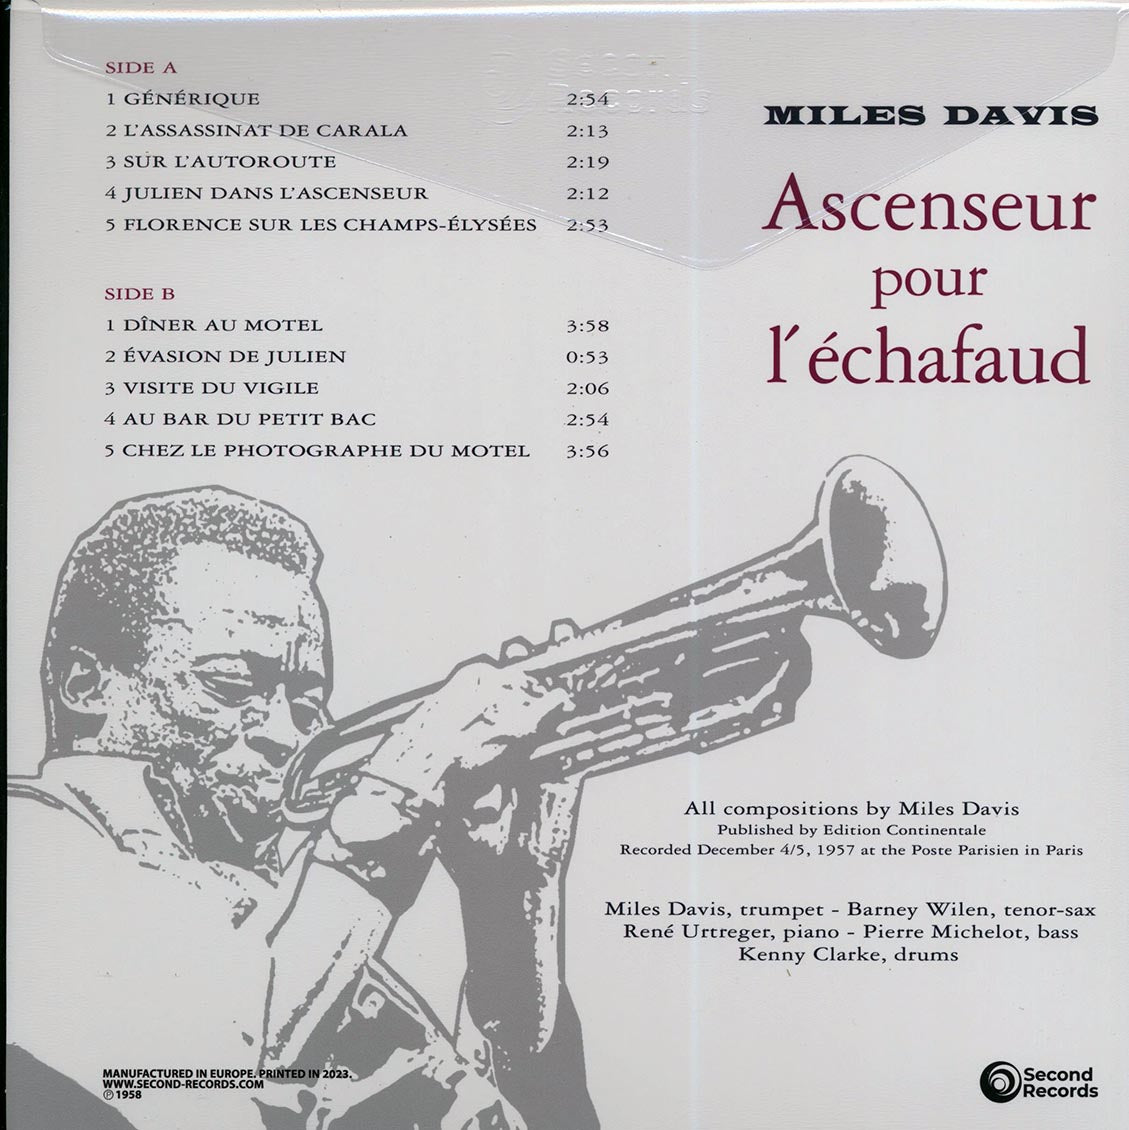 Miles Davis - Ascenseur Pour L'echafaud: Lift To The Scaffold (180g) (magenta vinyl) - Vinyl LP, LP